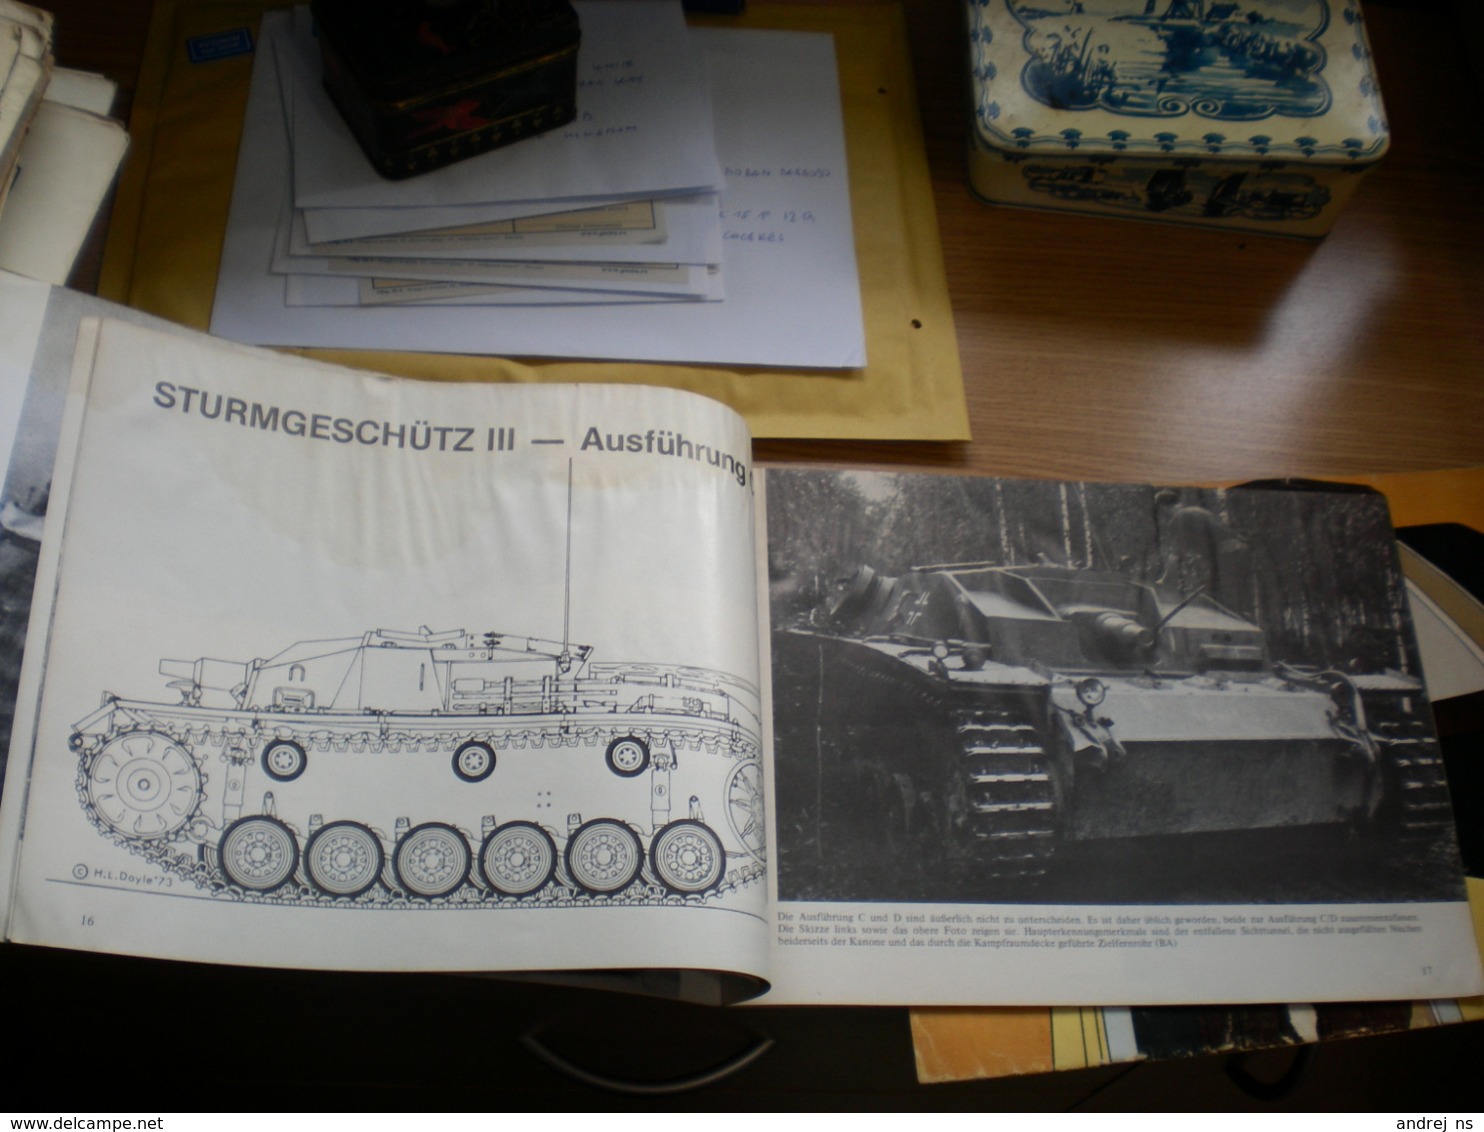 Tank Sturmgeschutz III L 24 Und L 33 Der Panzer Der Infanterie Waffen Arsenal 48 Pages - Germania